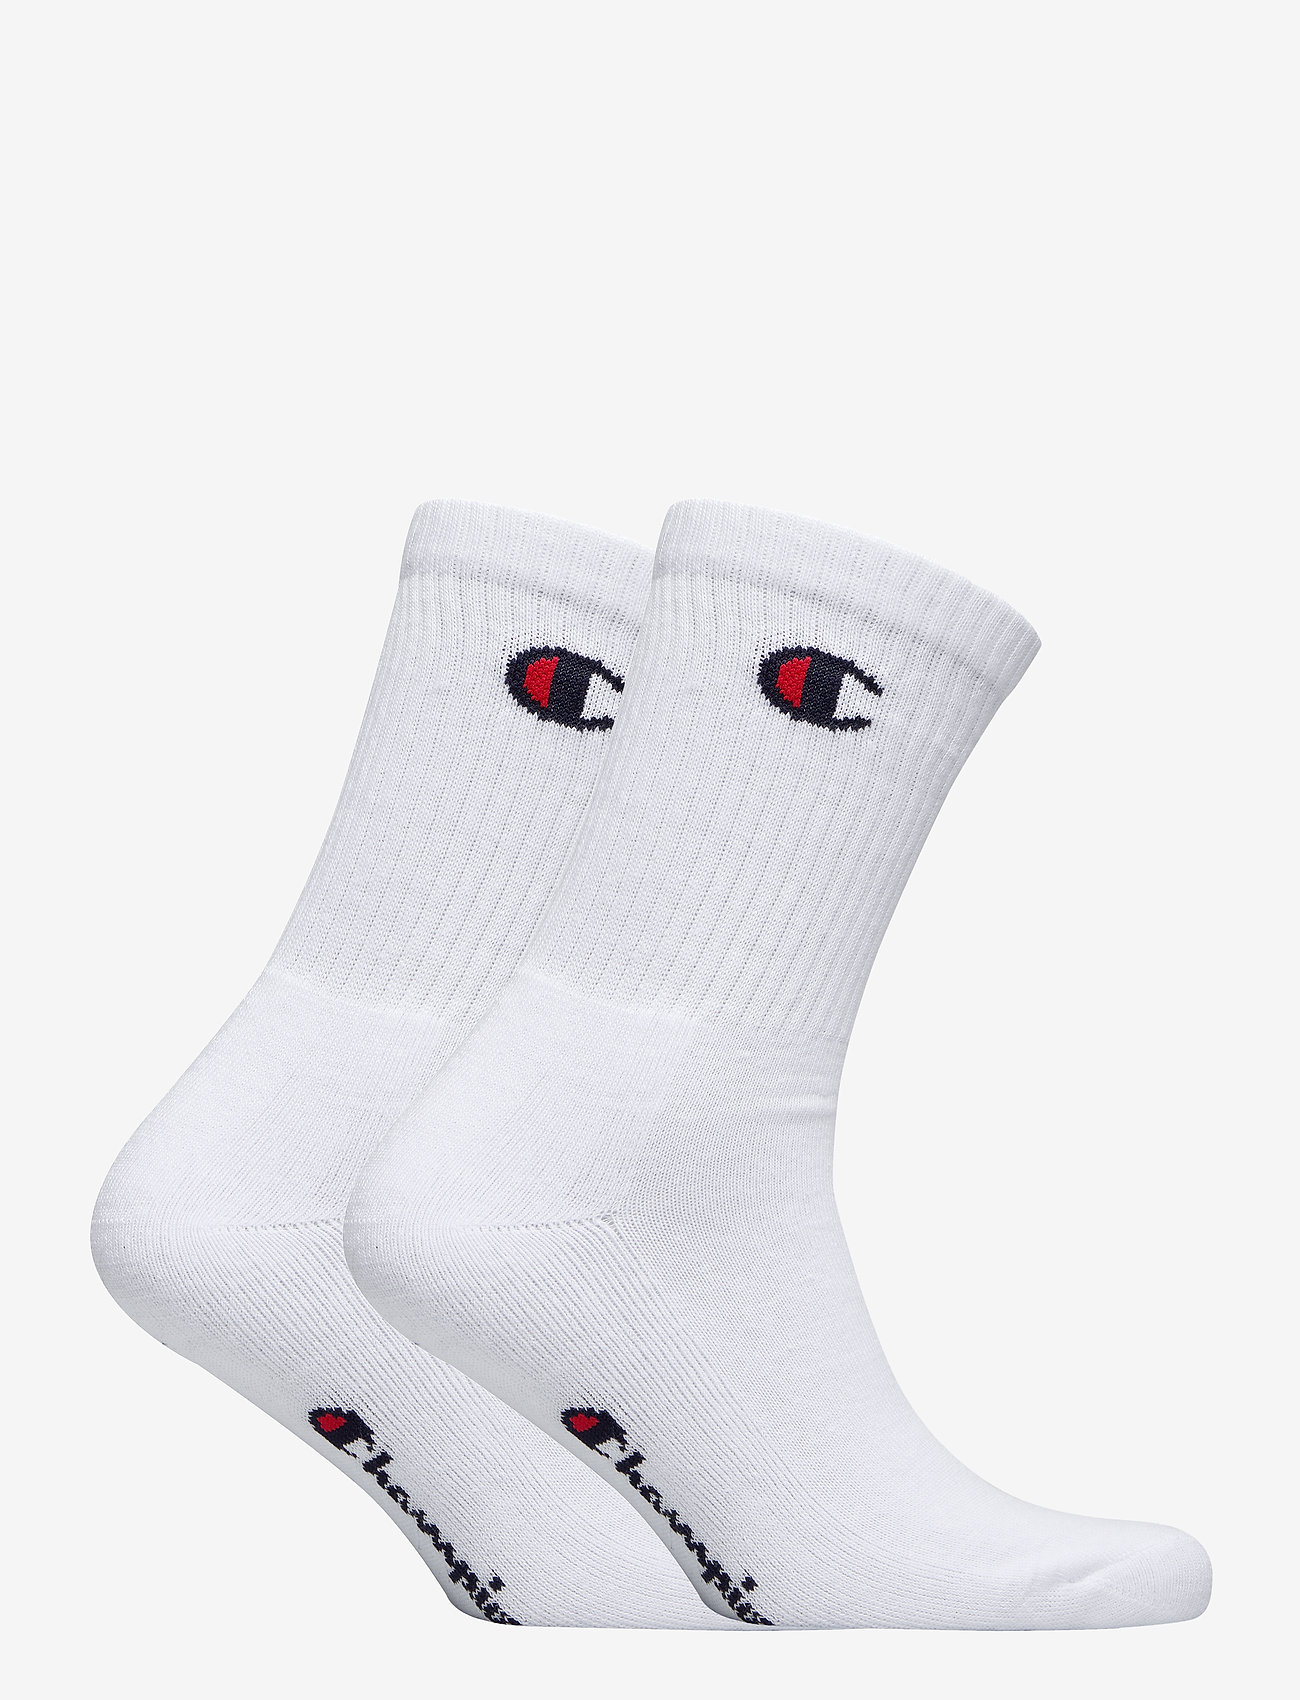 3pp Crew Socks (White) (12.75 